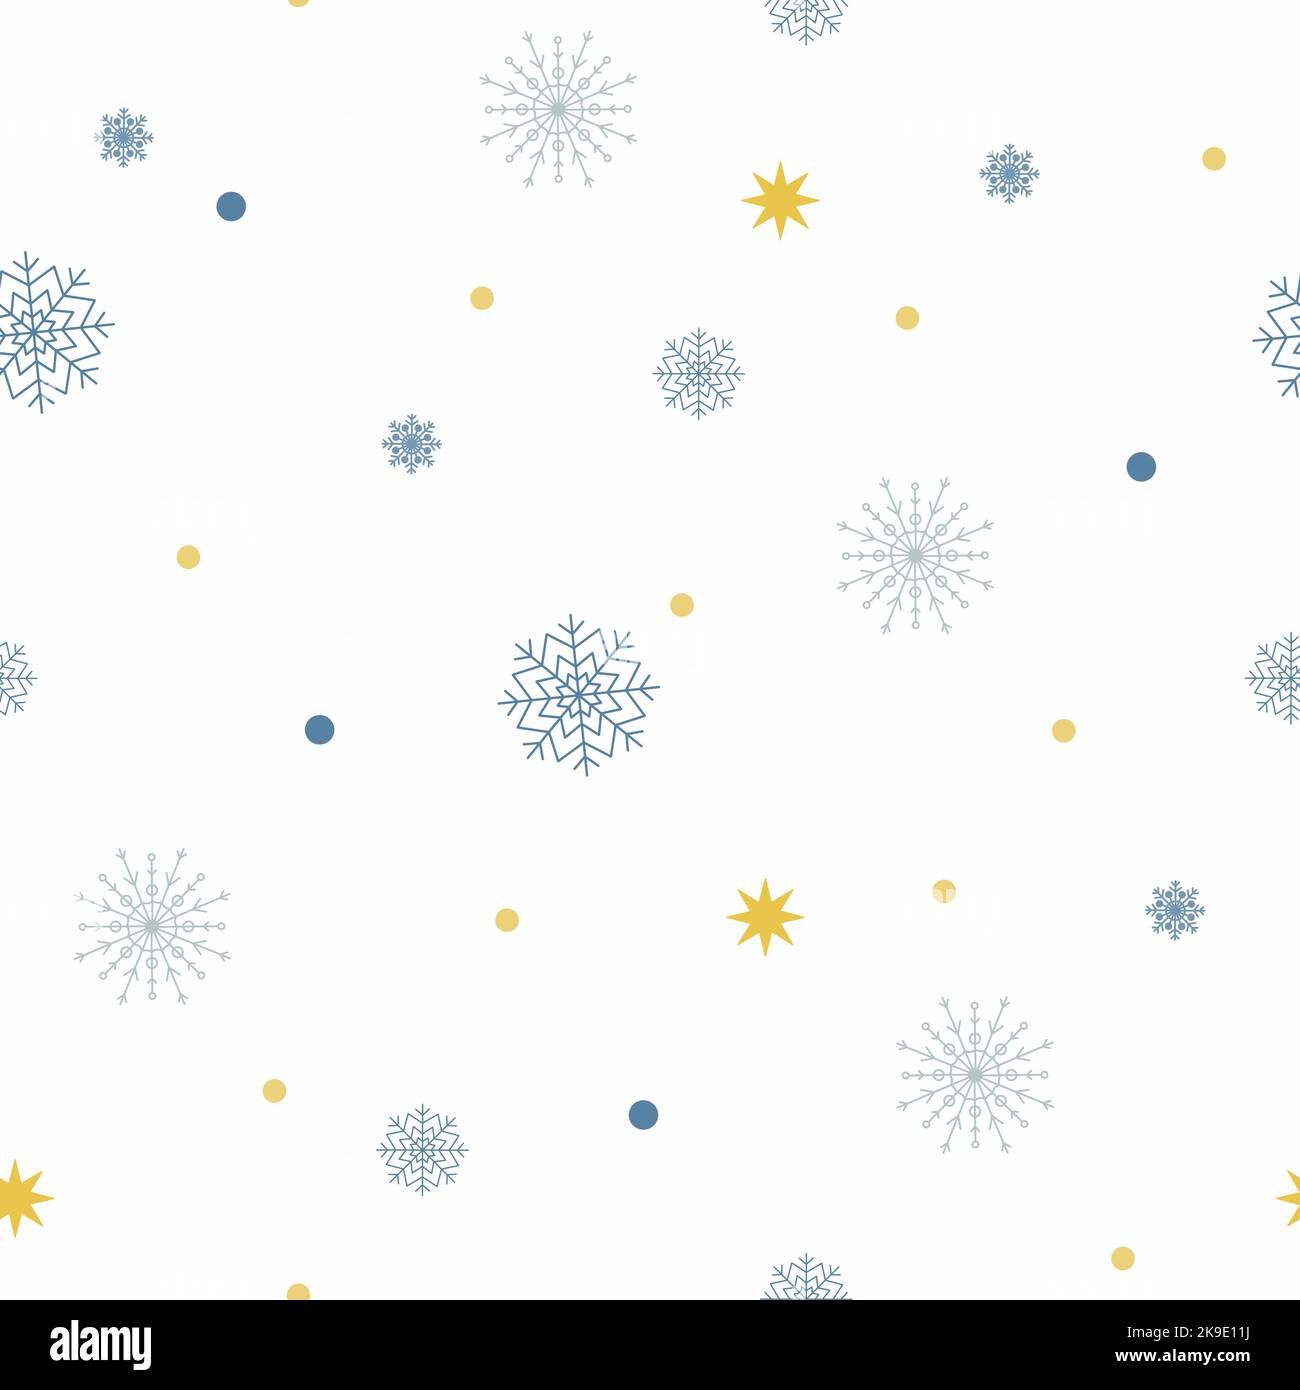 Motif raster Noël sans coutures avec flocons de neige et paillettes. Noël Saint Jolly. Ensemble de flocons de neige et étoile dorée, scintille sur fond blanc. Banque D'Images